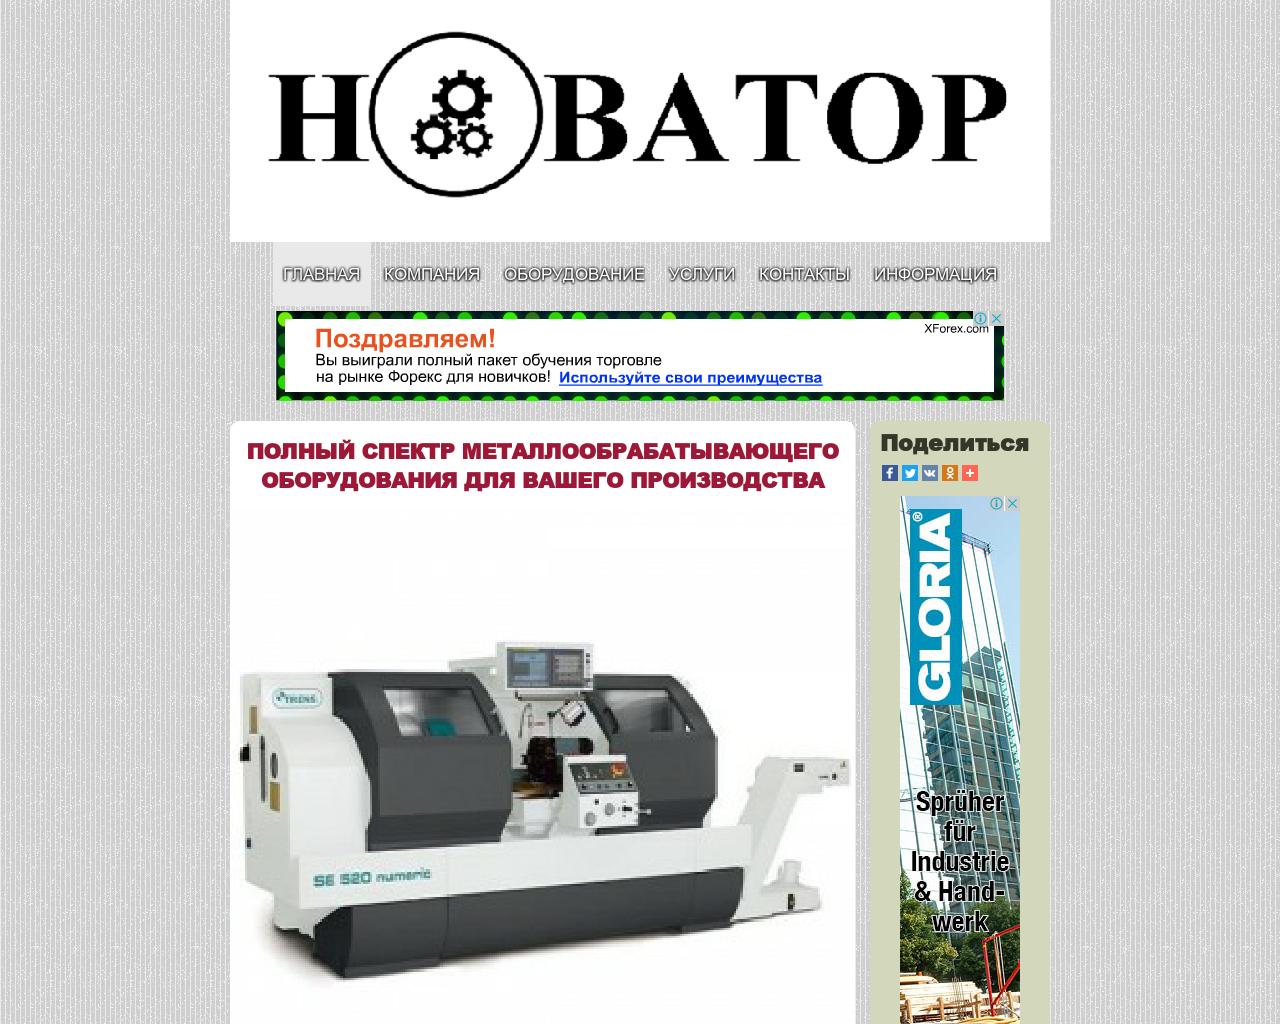 Изображение сайта novator-com.ru в разрешении 1280x1024